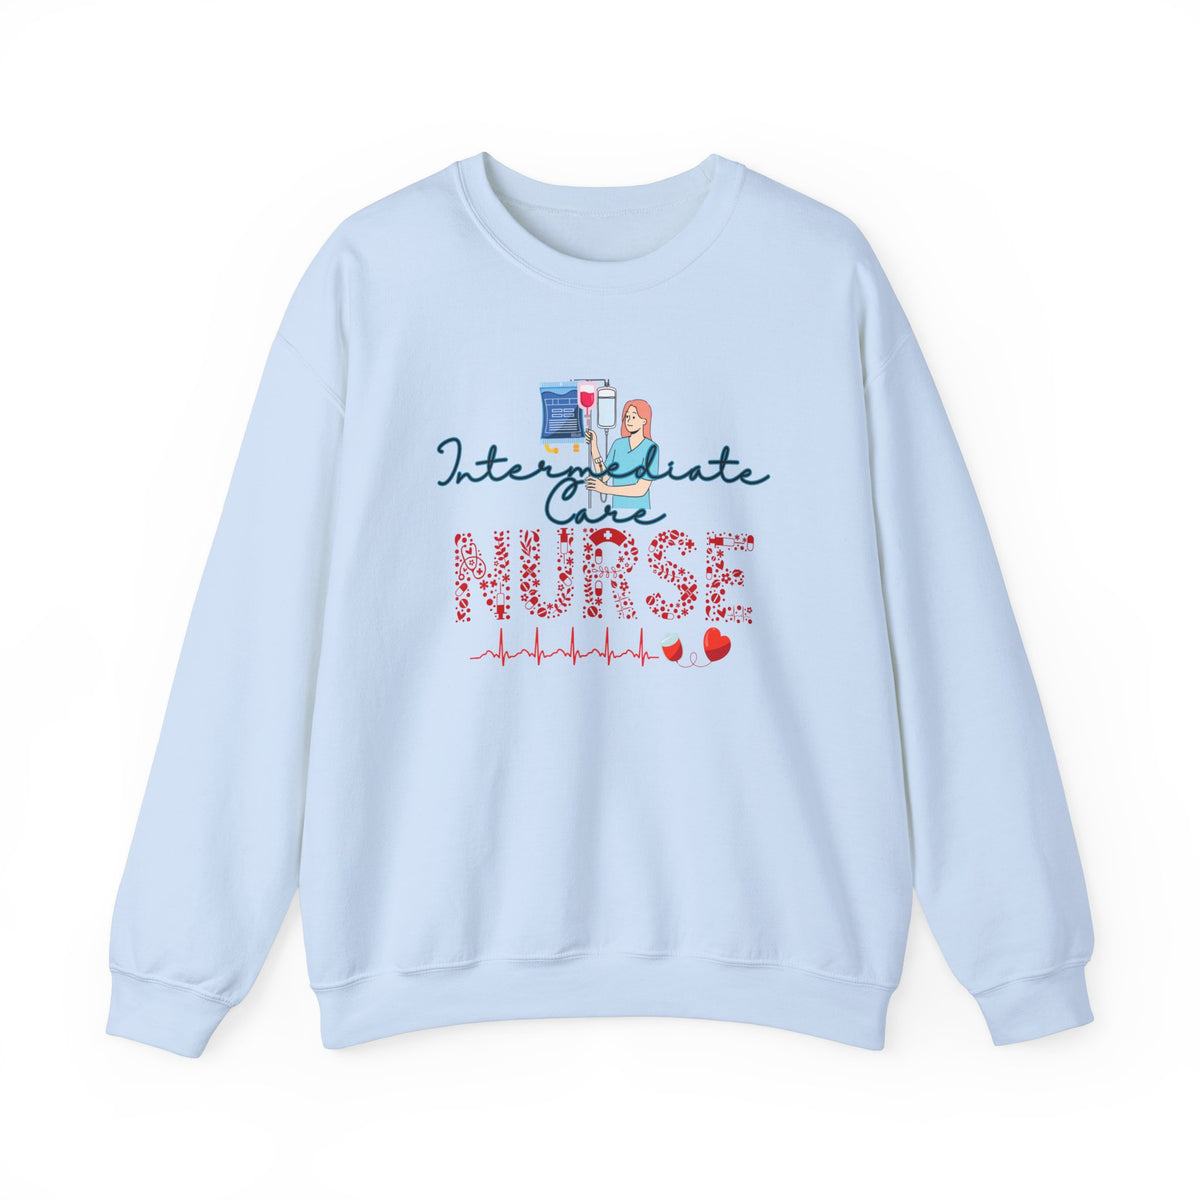 Nurse Crewneck Sweatshirt